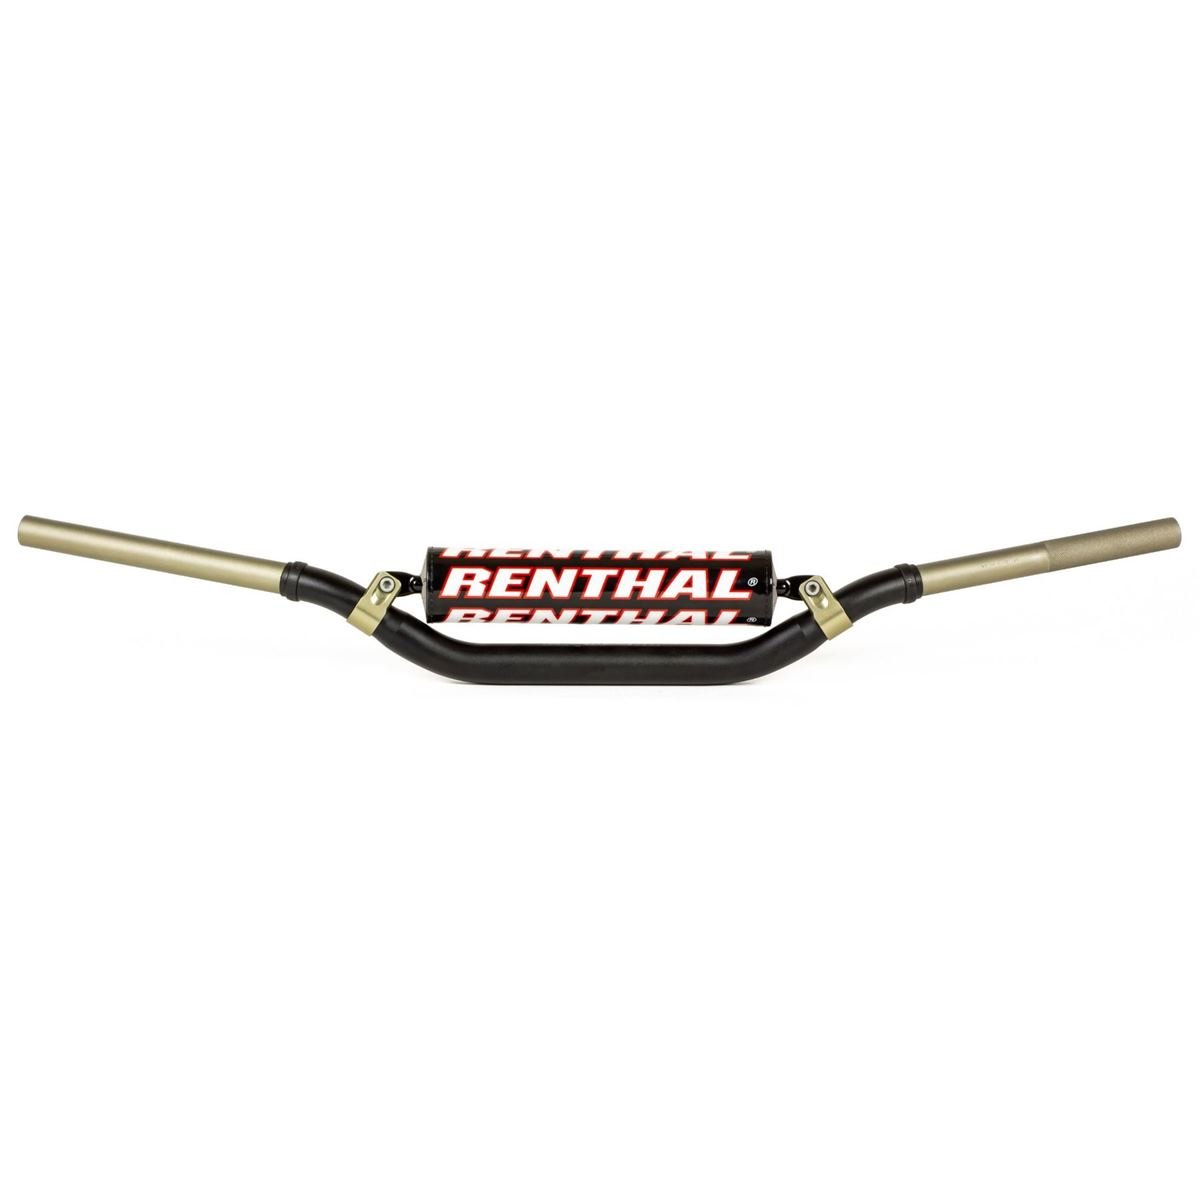 Renthal Manubrio Twinwall 991, 28.6 mm, Glenn Coldenhoff